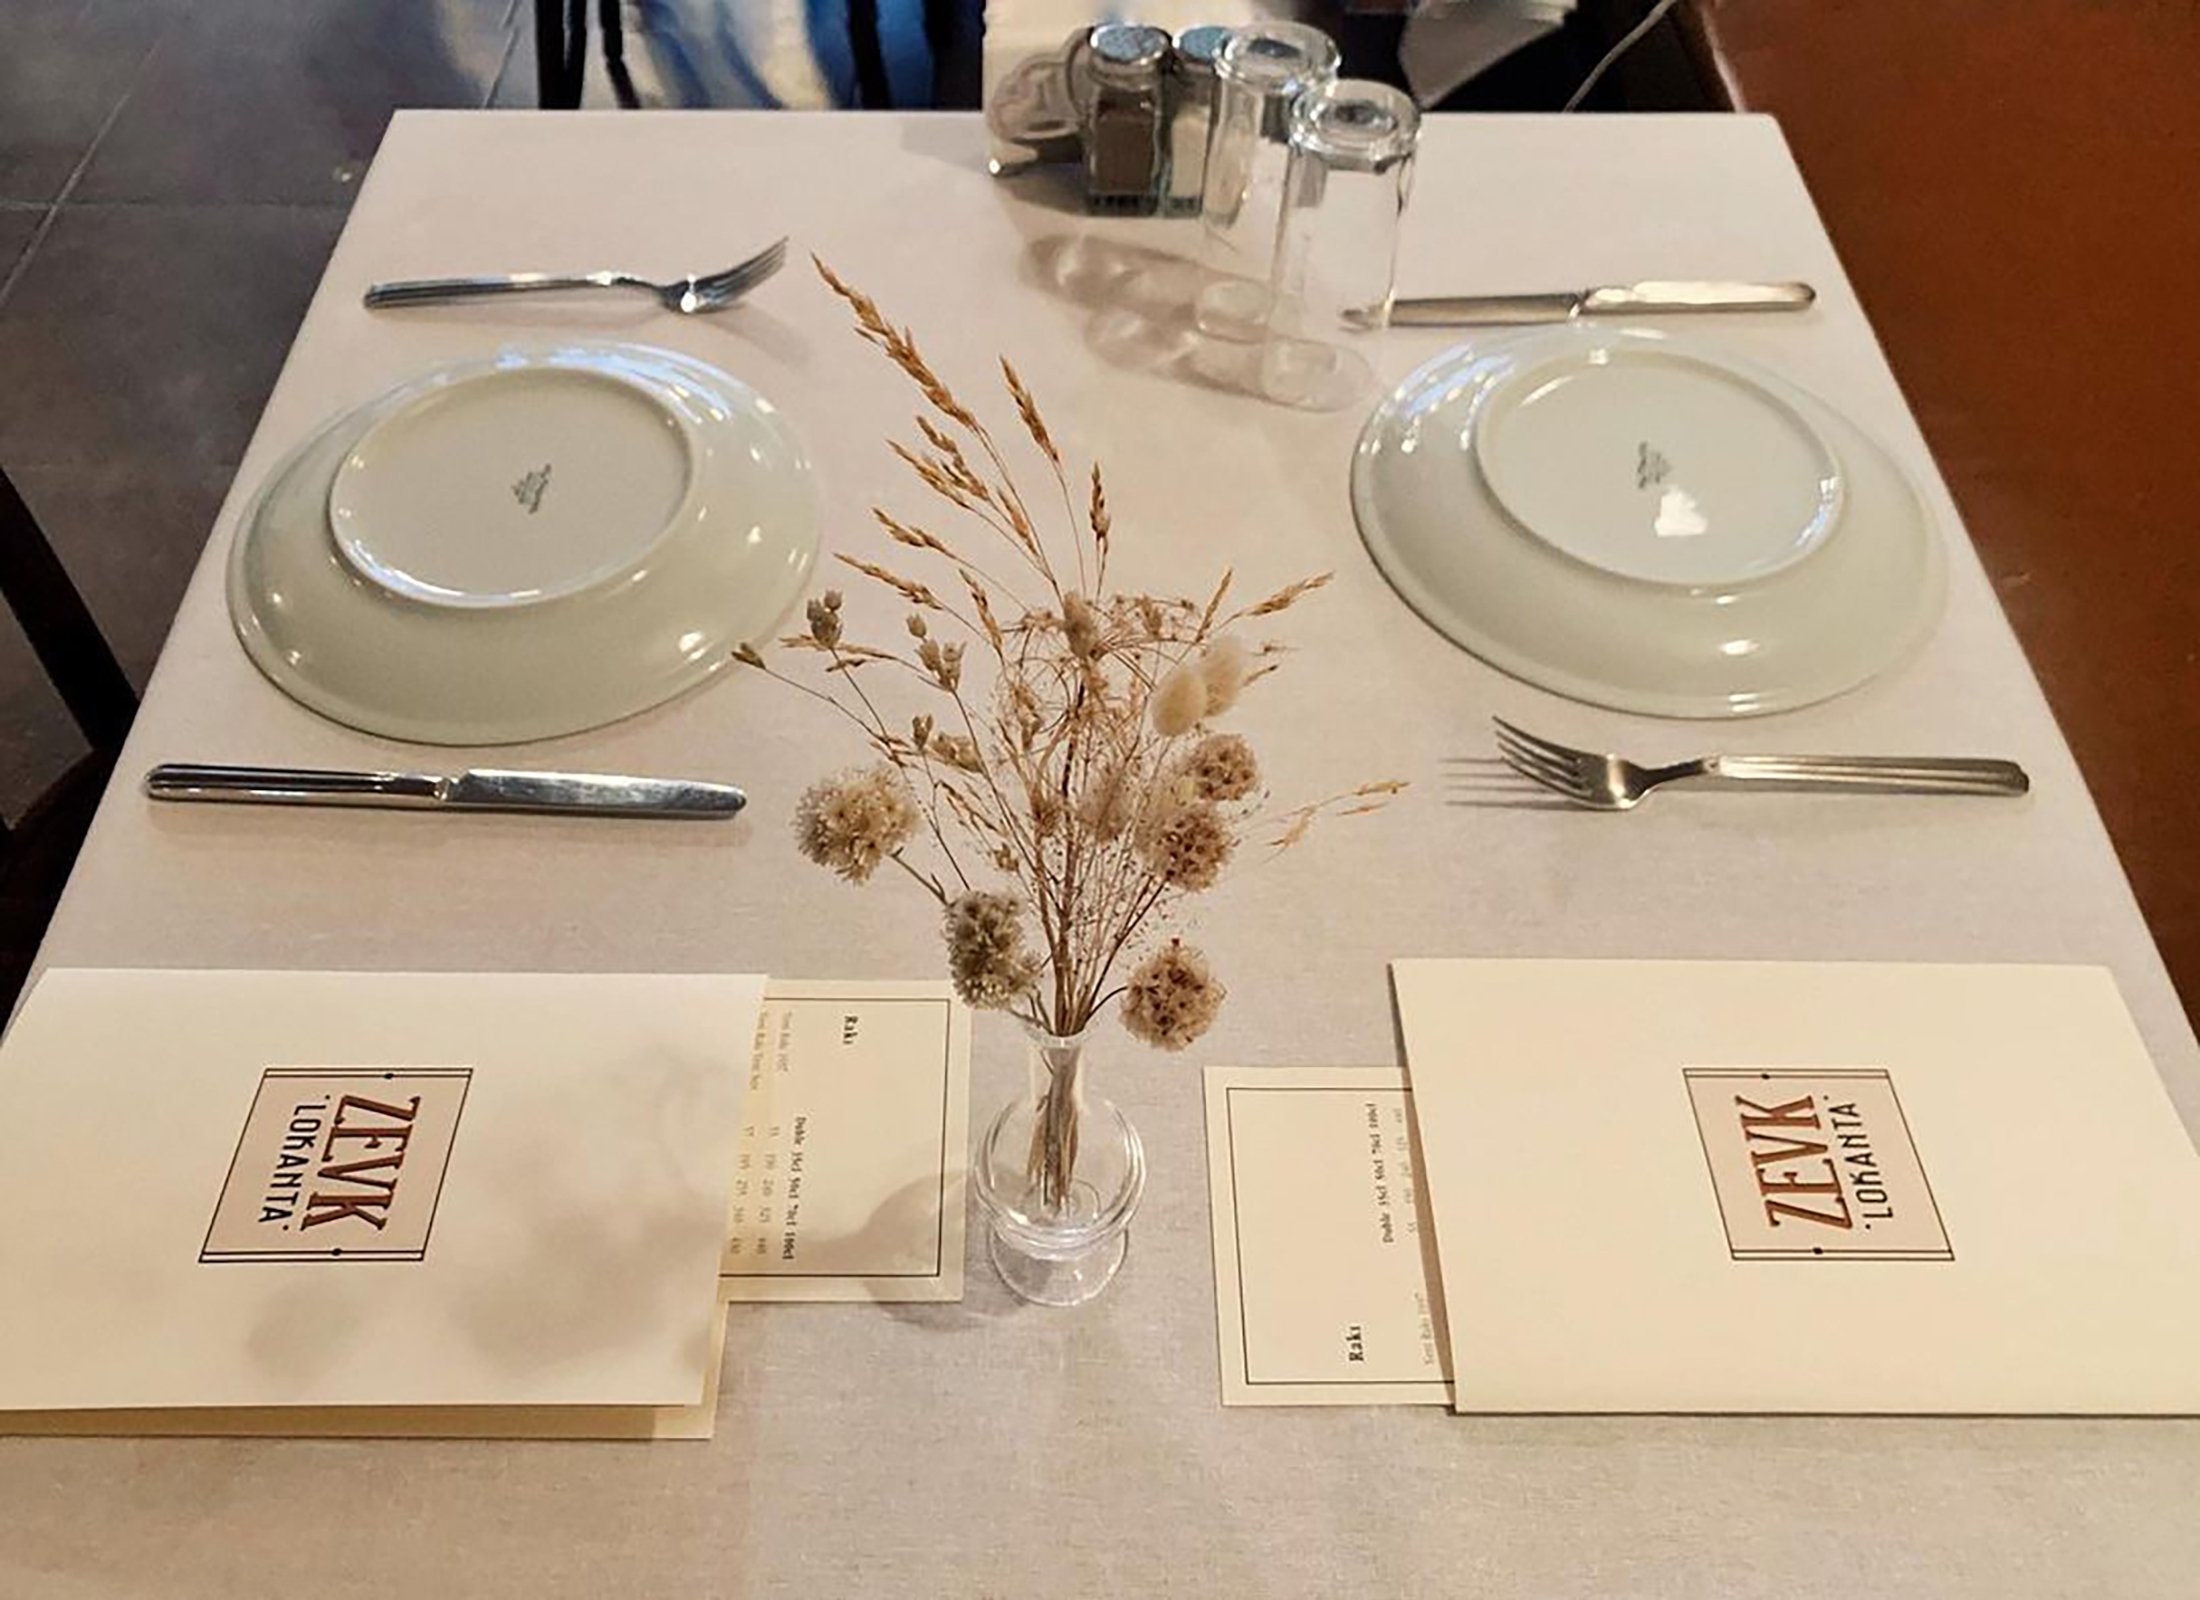 The tables prepped for customers at Zevk Lokanta, in Kadıköy's Moda, Istanbul, Turkey. (Photo from Instagram / @zevklokanta)